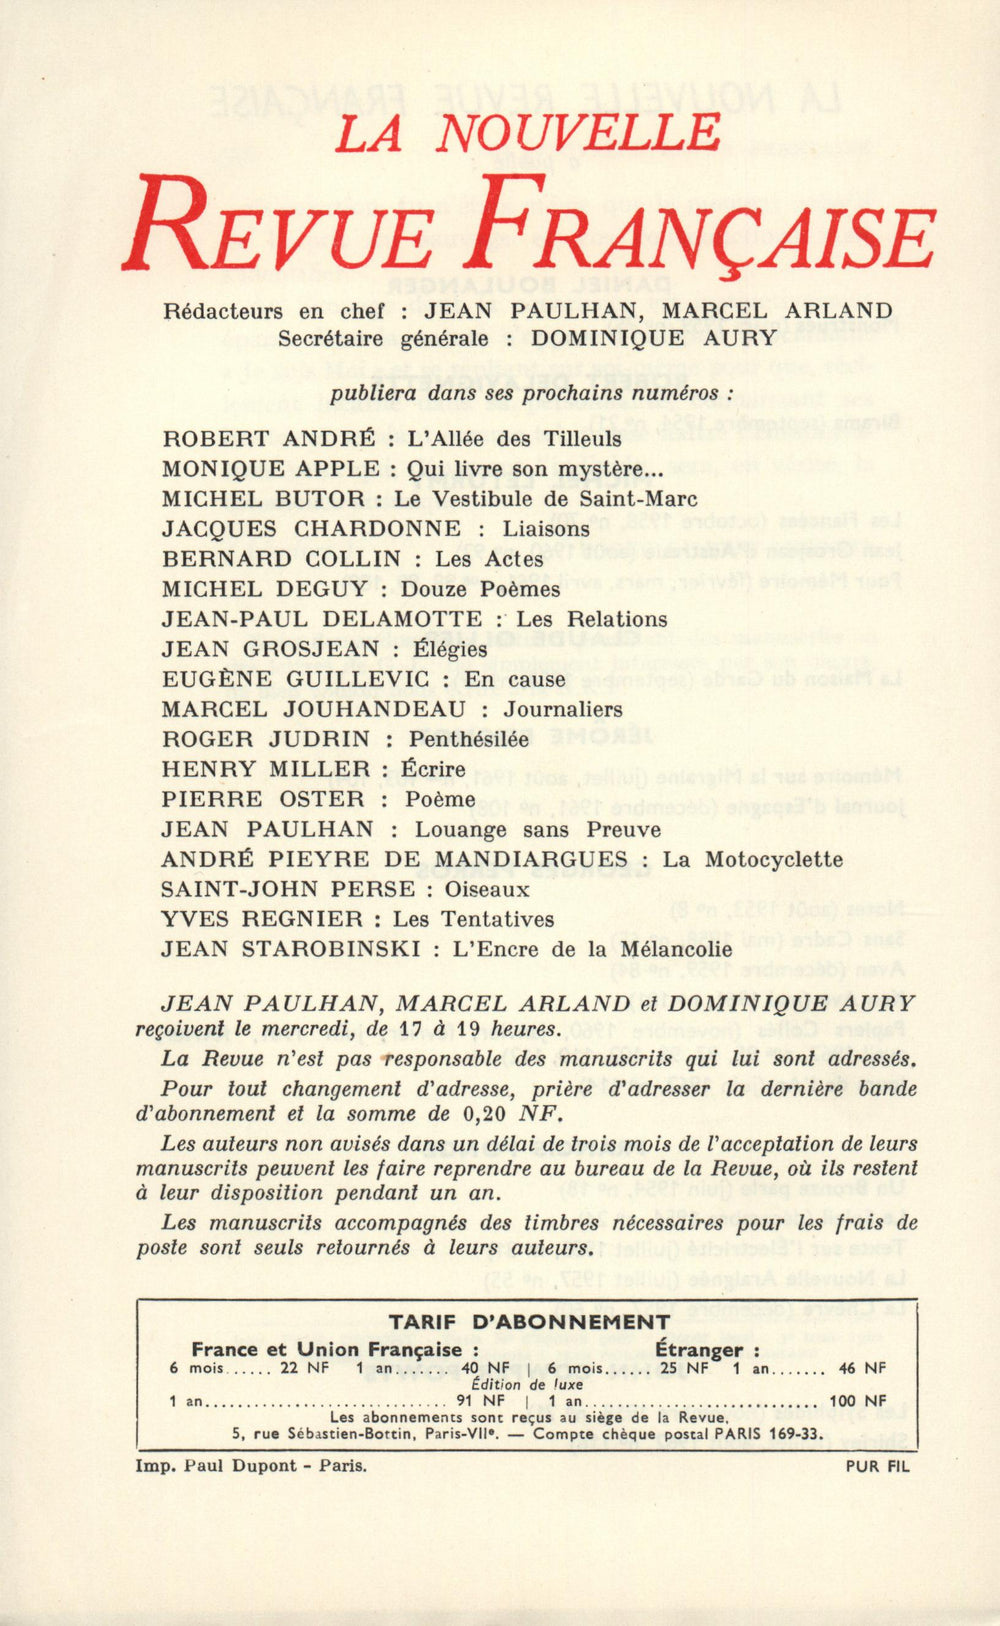 La Nouvelle Revue Française N' 117 (Septembre 1962)